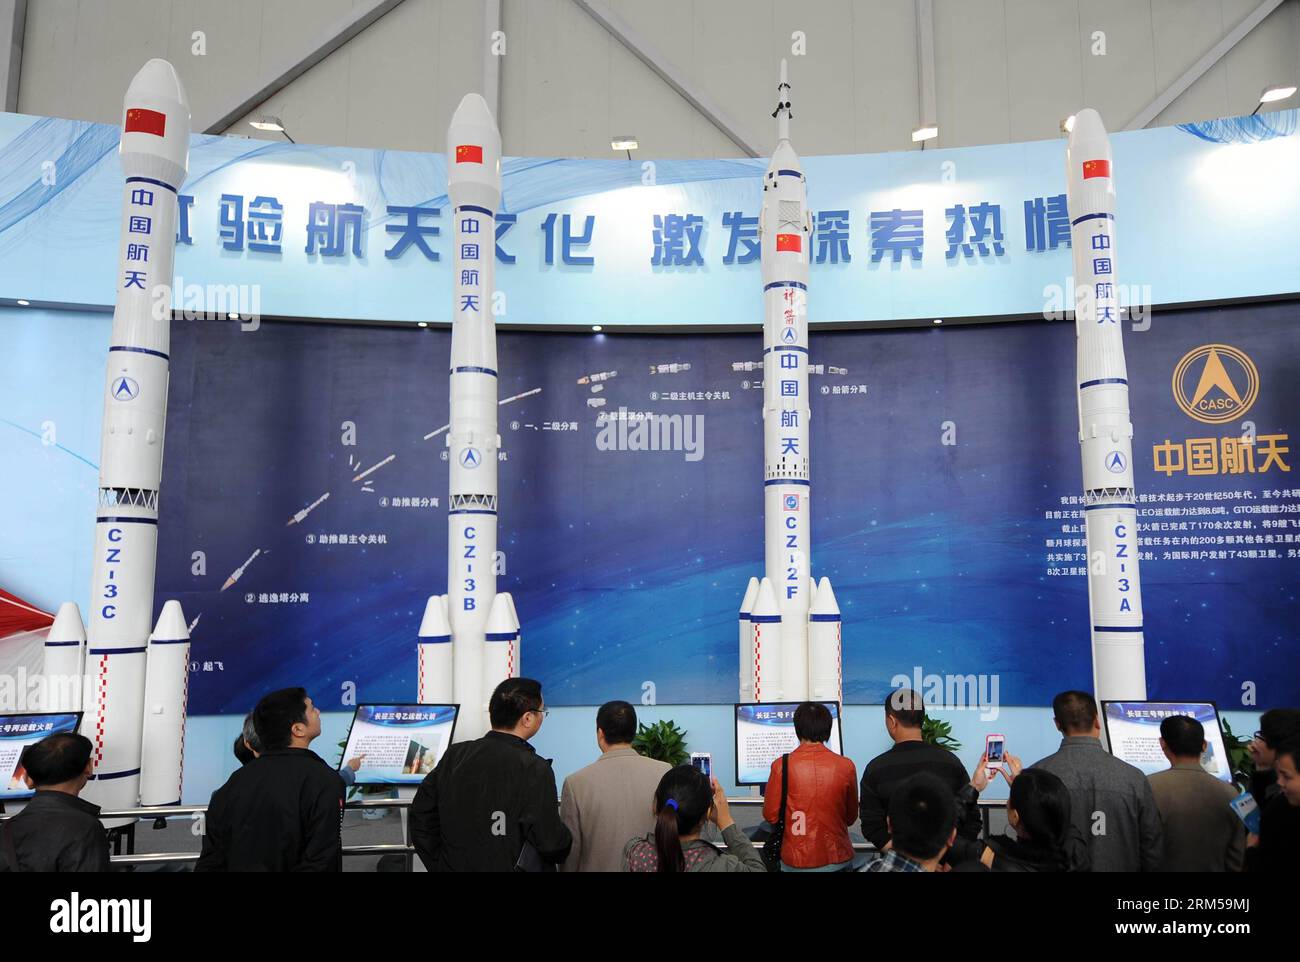 Bildnummer: 60605751 Datum: 16.10.2013 Copyright: imago/Xinhua (131016) -- MIANYANG, 16 ottobre 2013 (Xinhua) -- i visitatori guardano i modelli di razzi all'High-Tech & Science Expo 2013 nella città di Mianyang, nella provincia del Sichuan della Cina sud-occidentale, 13 ottobre 2013. L'expo, che ha chiuso qui il mercoledì, ha attirato oltre 310.000 visitatori e ha esposto 1.304 mostre in tre giorni. (Xinhua/Xu Yubin) (mt) CHINA-SICHUAN-MIANYANG-HIGH-TECH&SCIENCE EXPO(CN) PUBLICATIONxNOTxINxCHN Messe xas x0x 2013 quer 60605751 Data 16 10 2013 Copyright Imago XINHUA Mianyang OCT 16 2013 visitatori XINHUA Guarda Rocket Mod Foto Stock